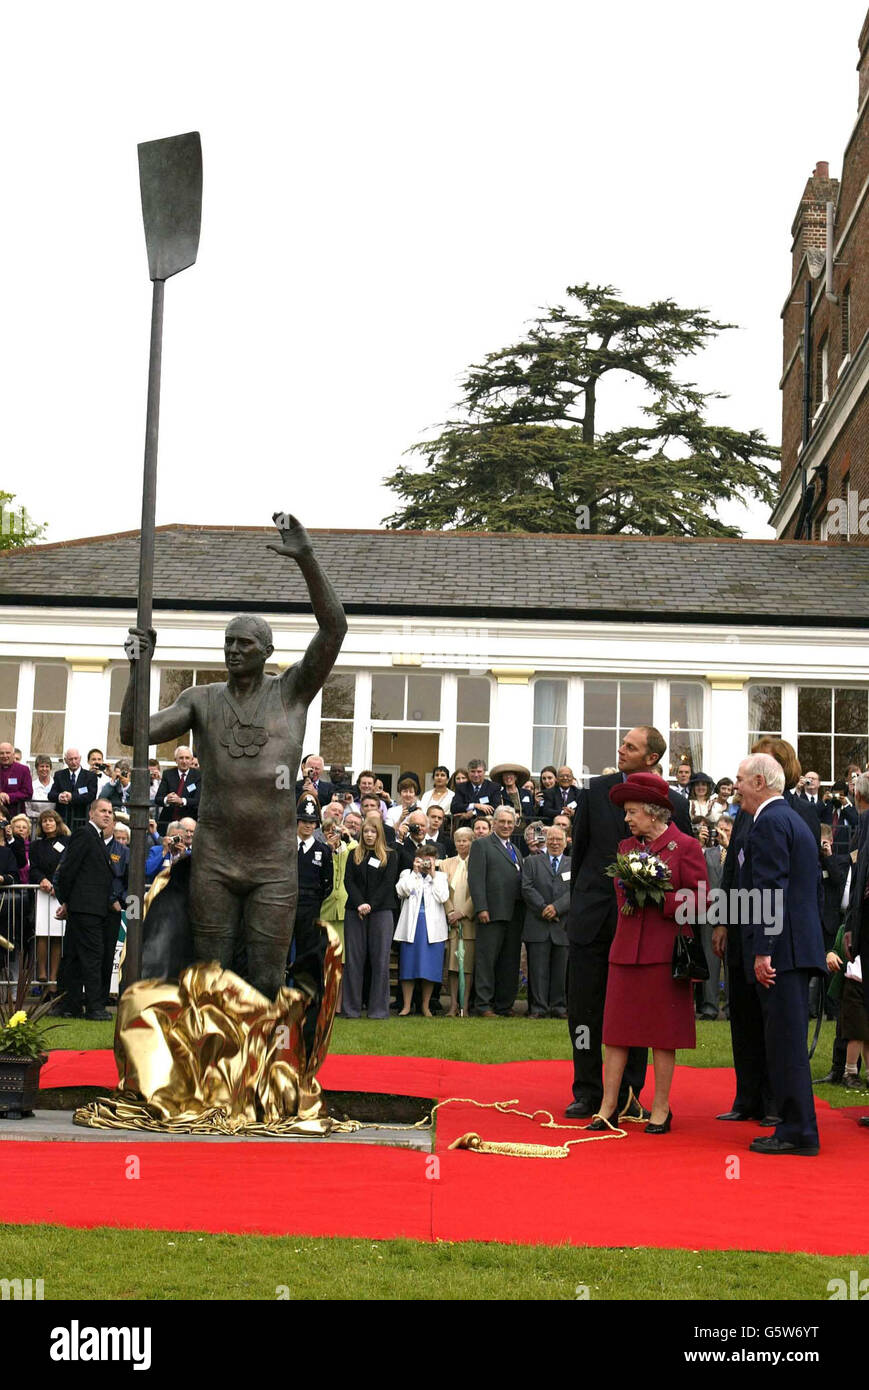 Königin Elizabeth II. Enthüllt heute während ihrer Golden Jubilee Tour eine Statue des olympischen Goldmedaillengewinners Sir Steven Redgrave in Marlow, Buckinghamshire. Stockfoto